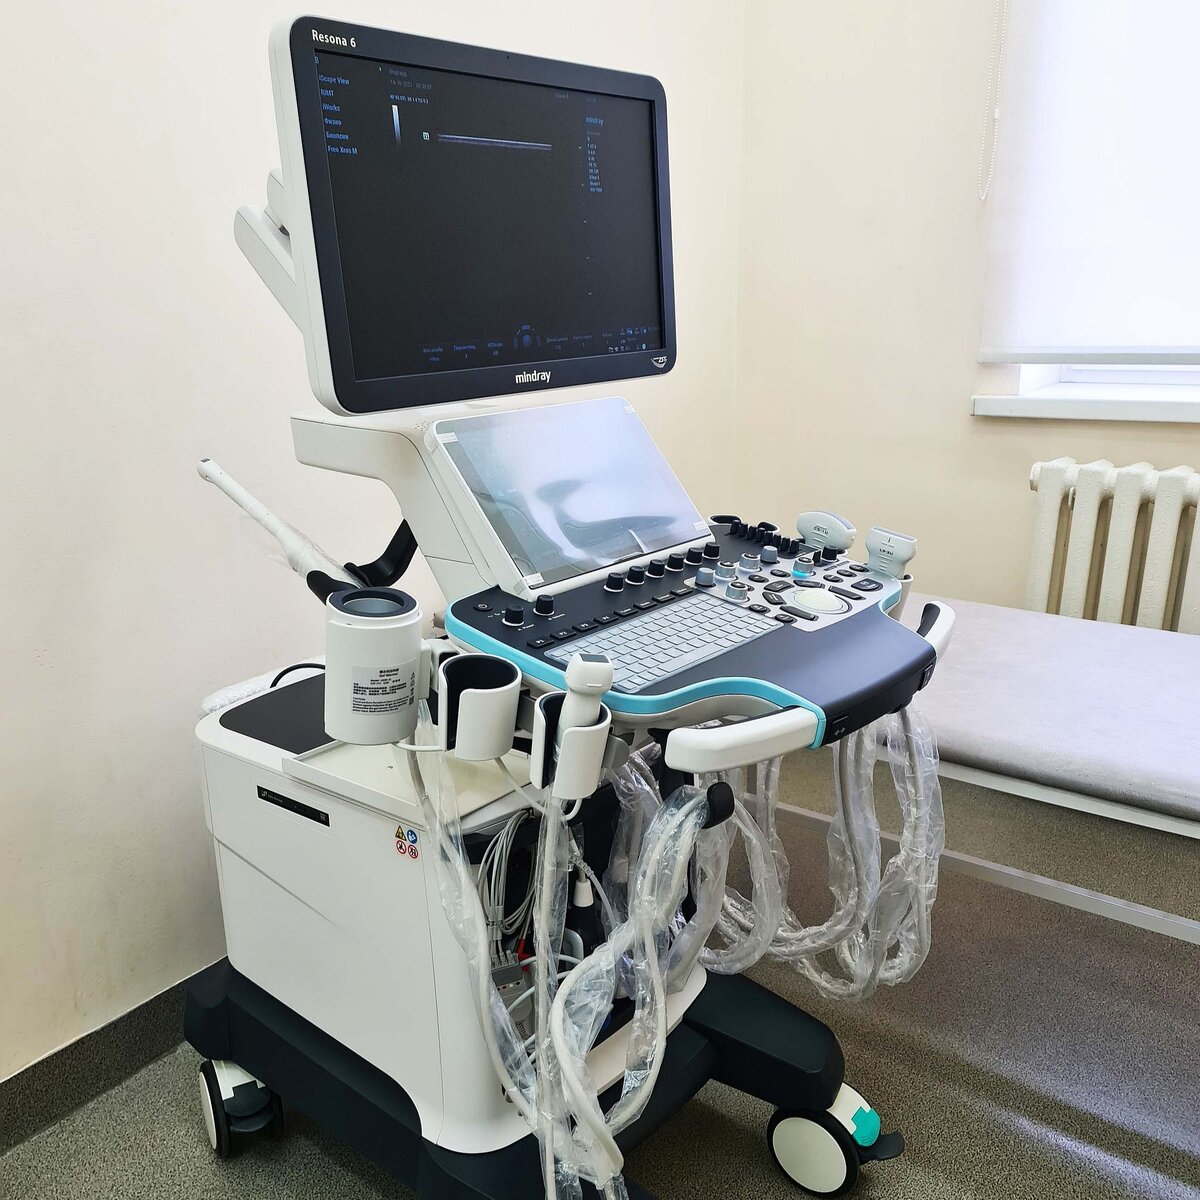 Производитель медицинского оборудования Mindray возобновил специализированную программу переоснащения кабинетов ультразвуковой диагностики с утилизацией старых аппаратов.-2-2